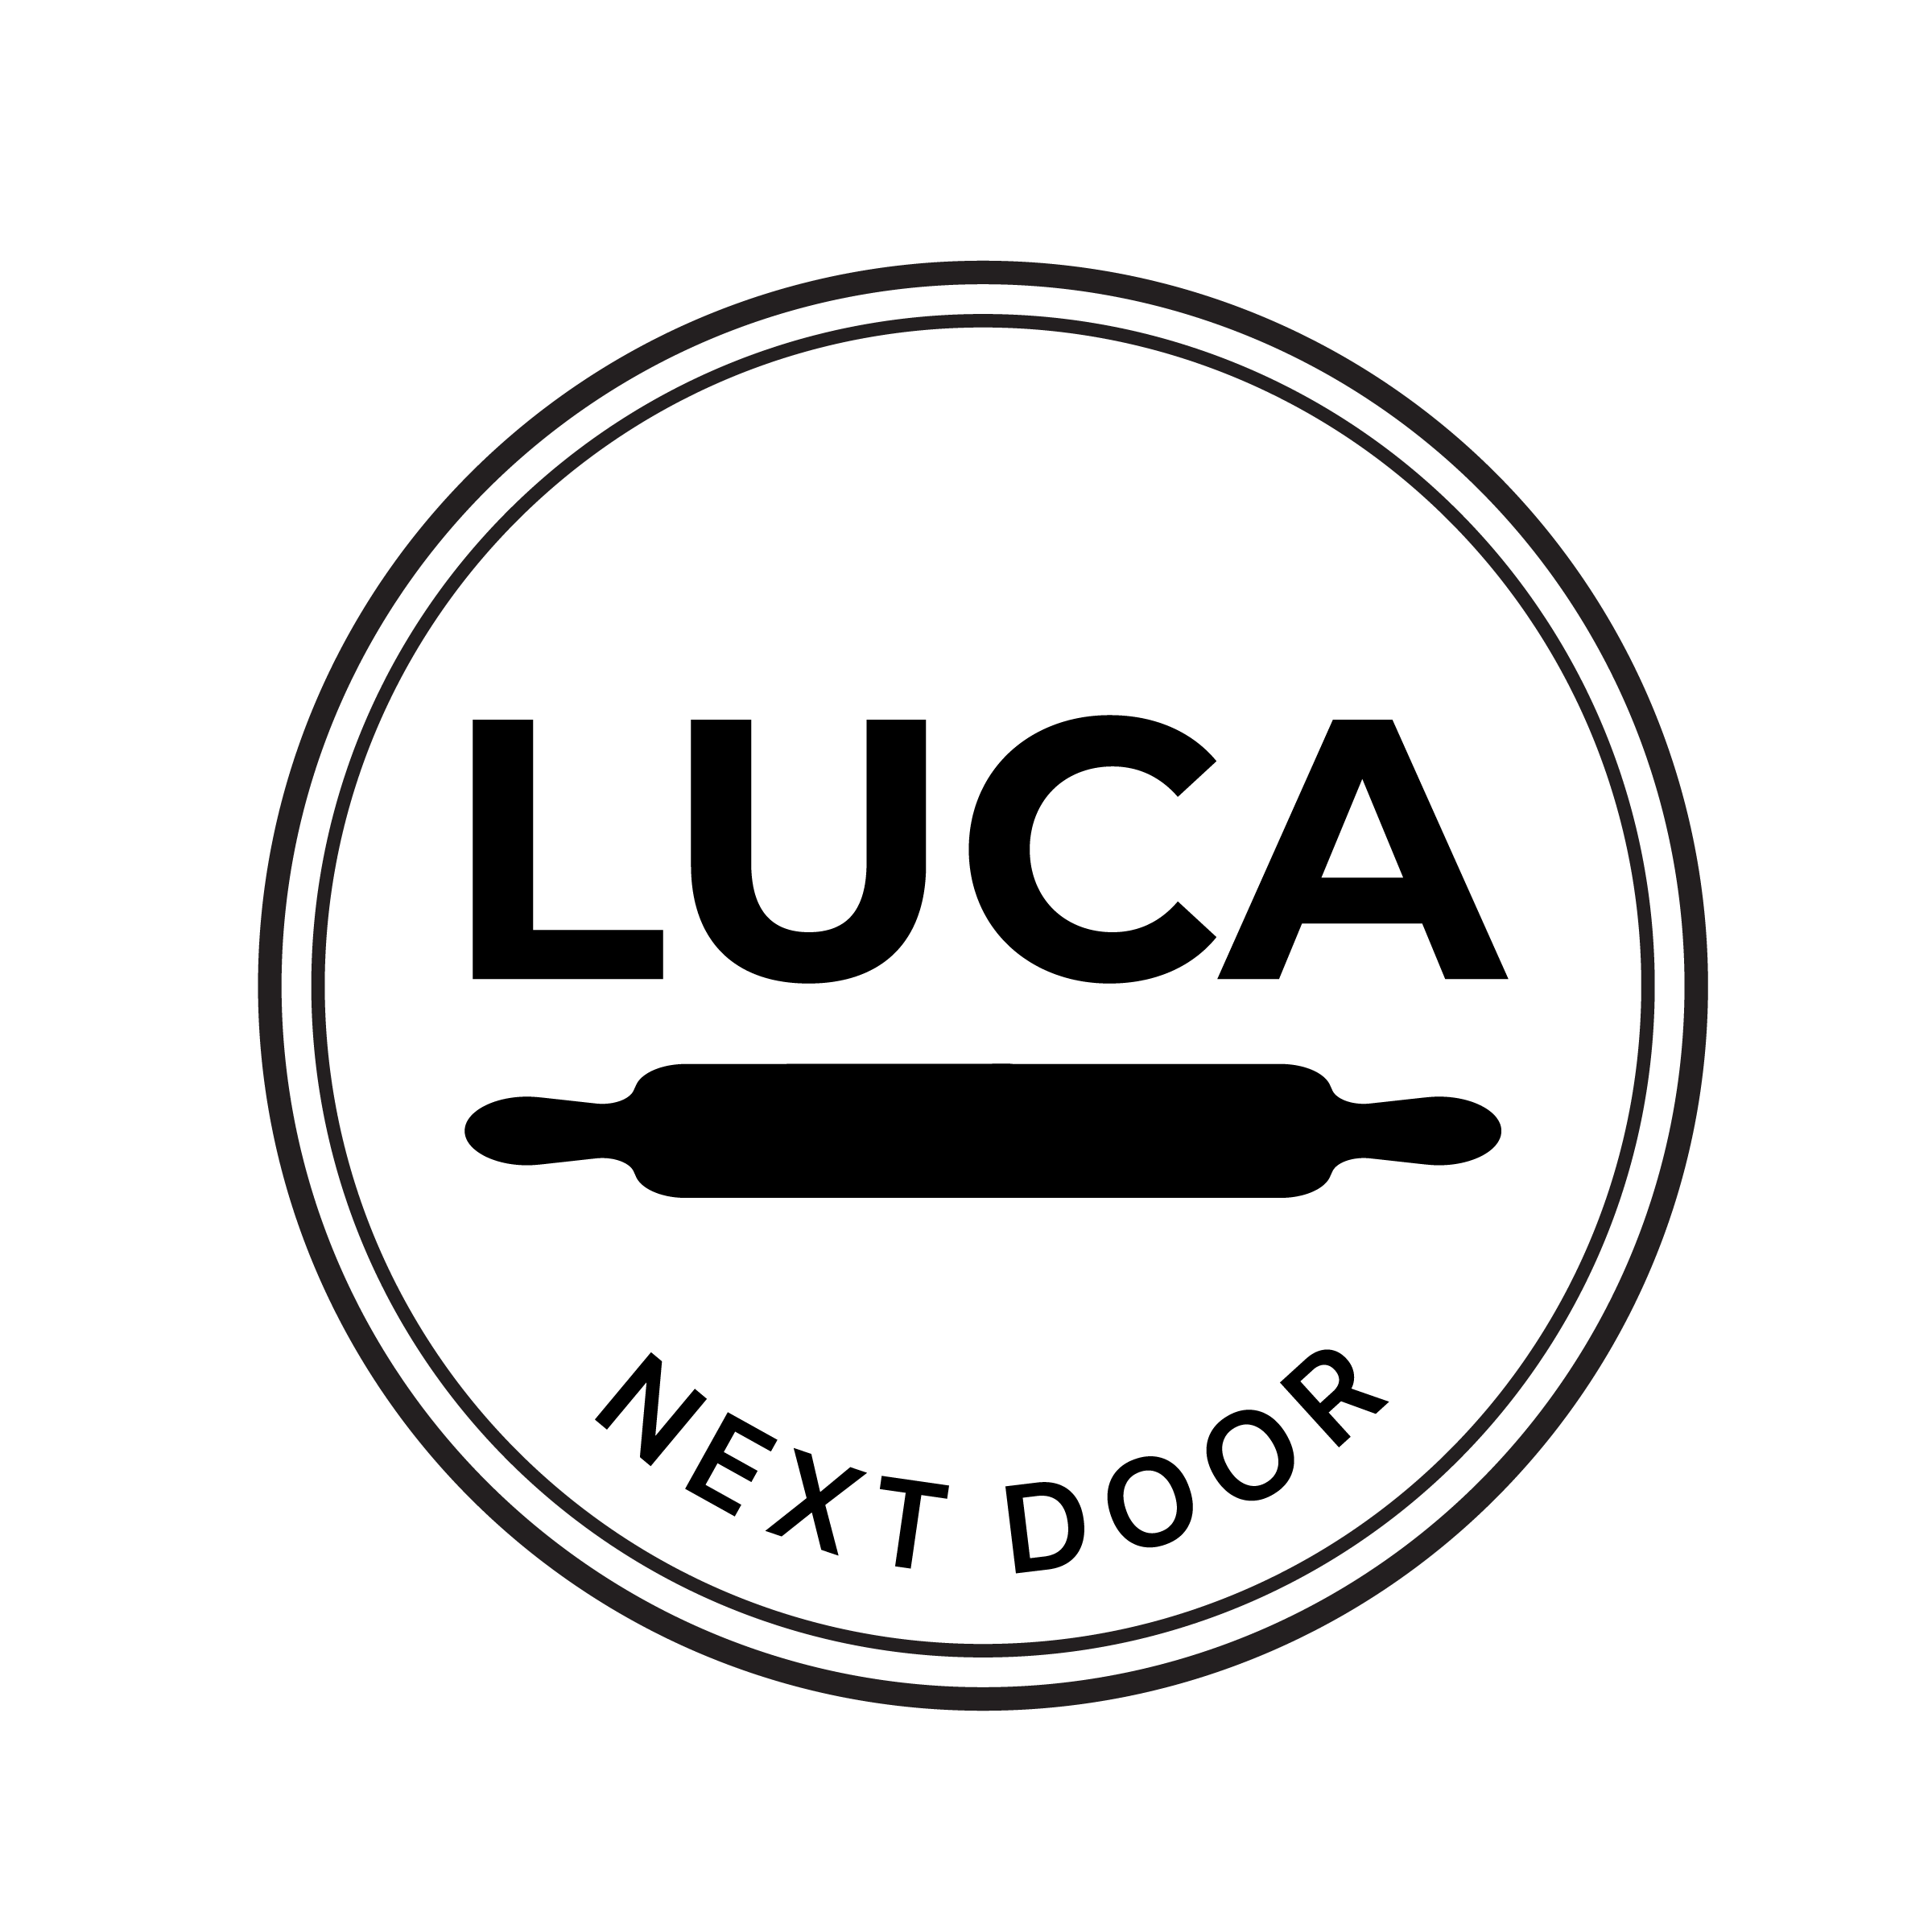 LUCA NEXT DOOR